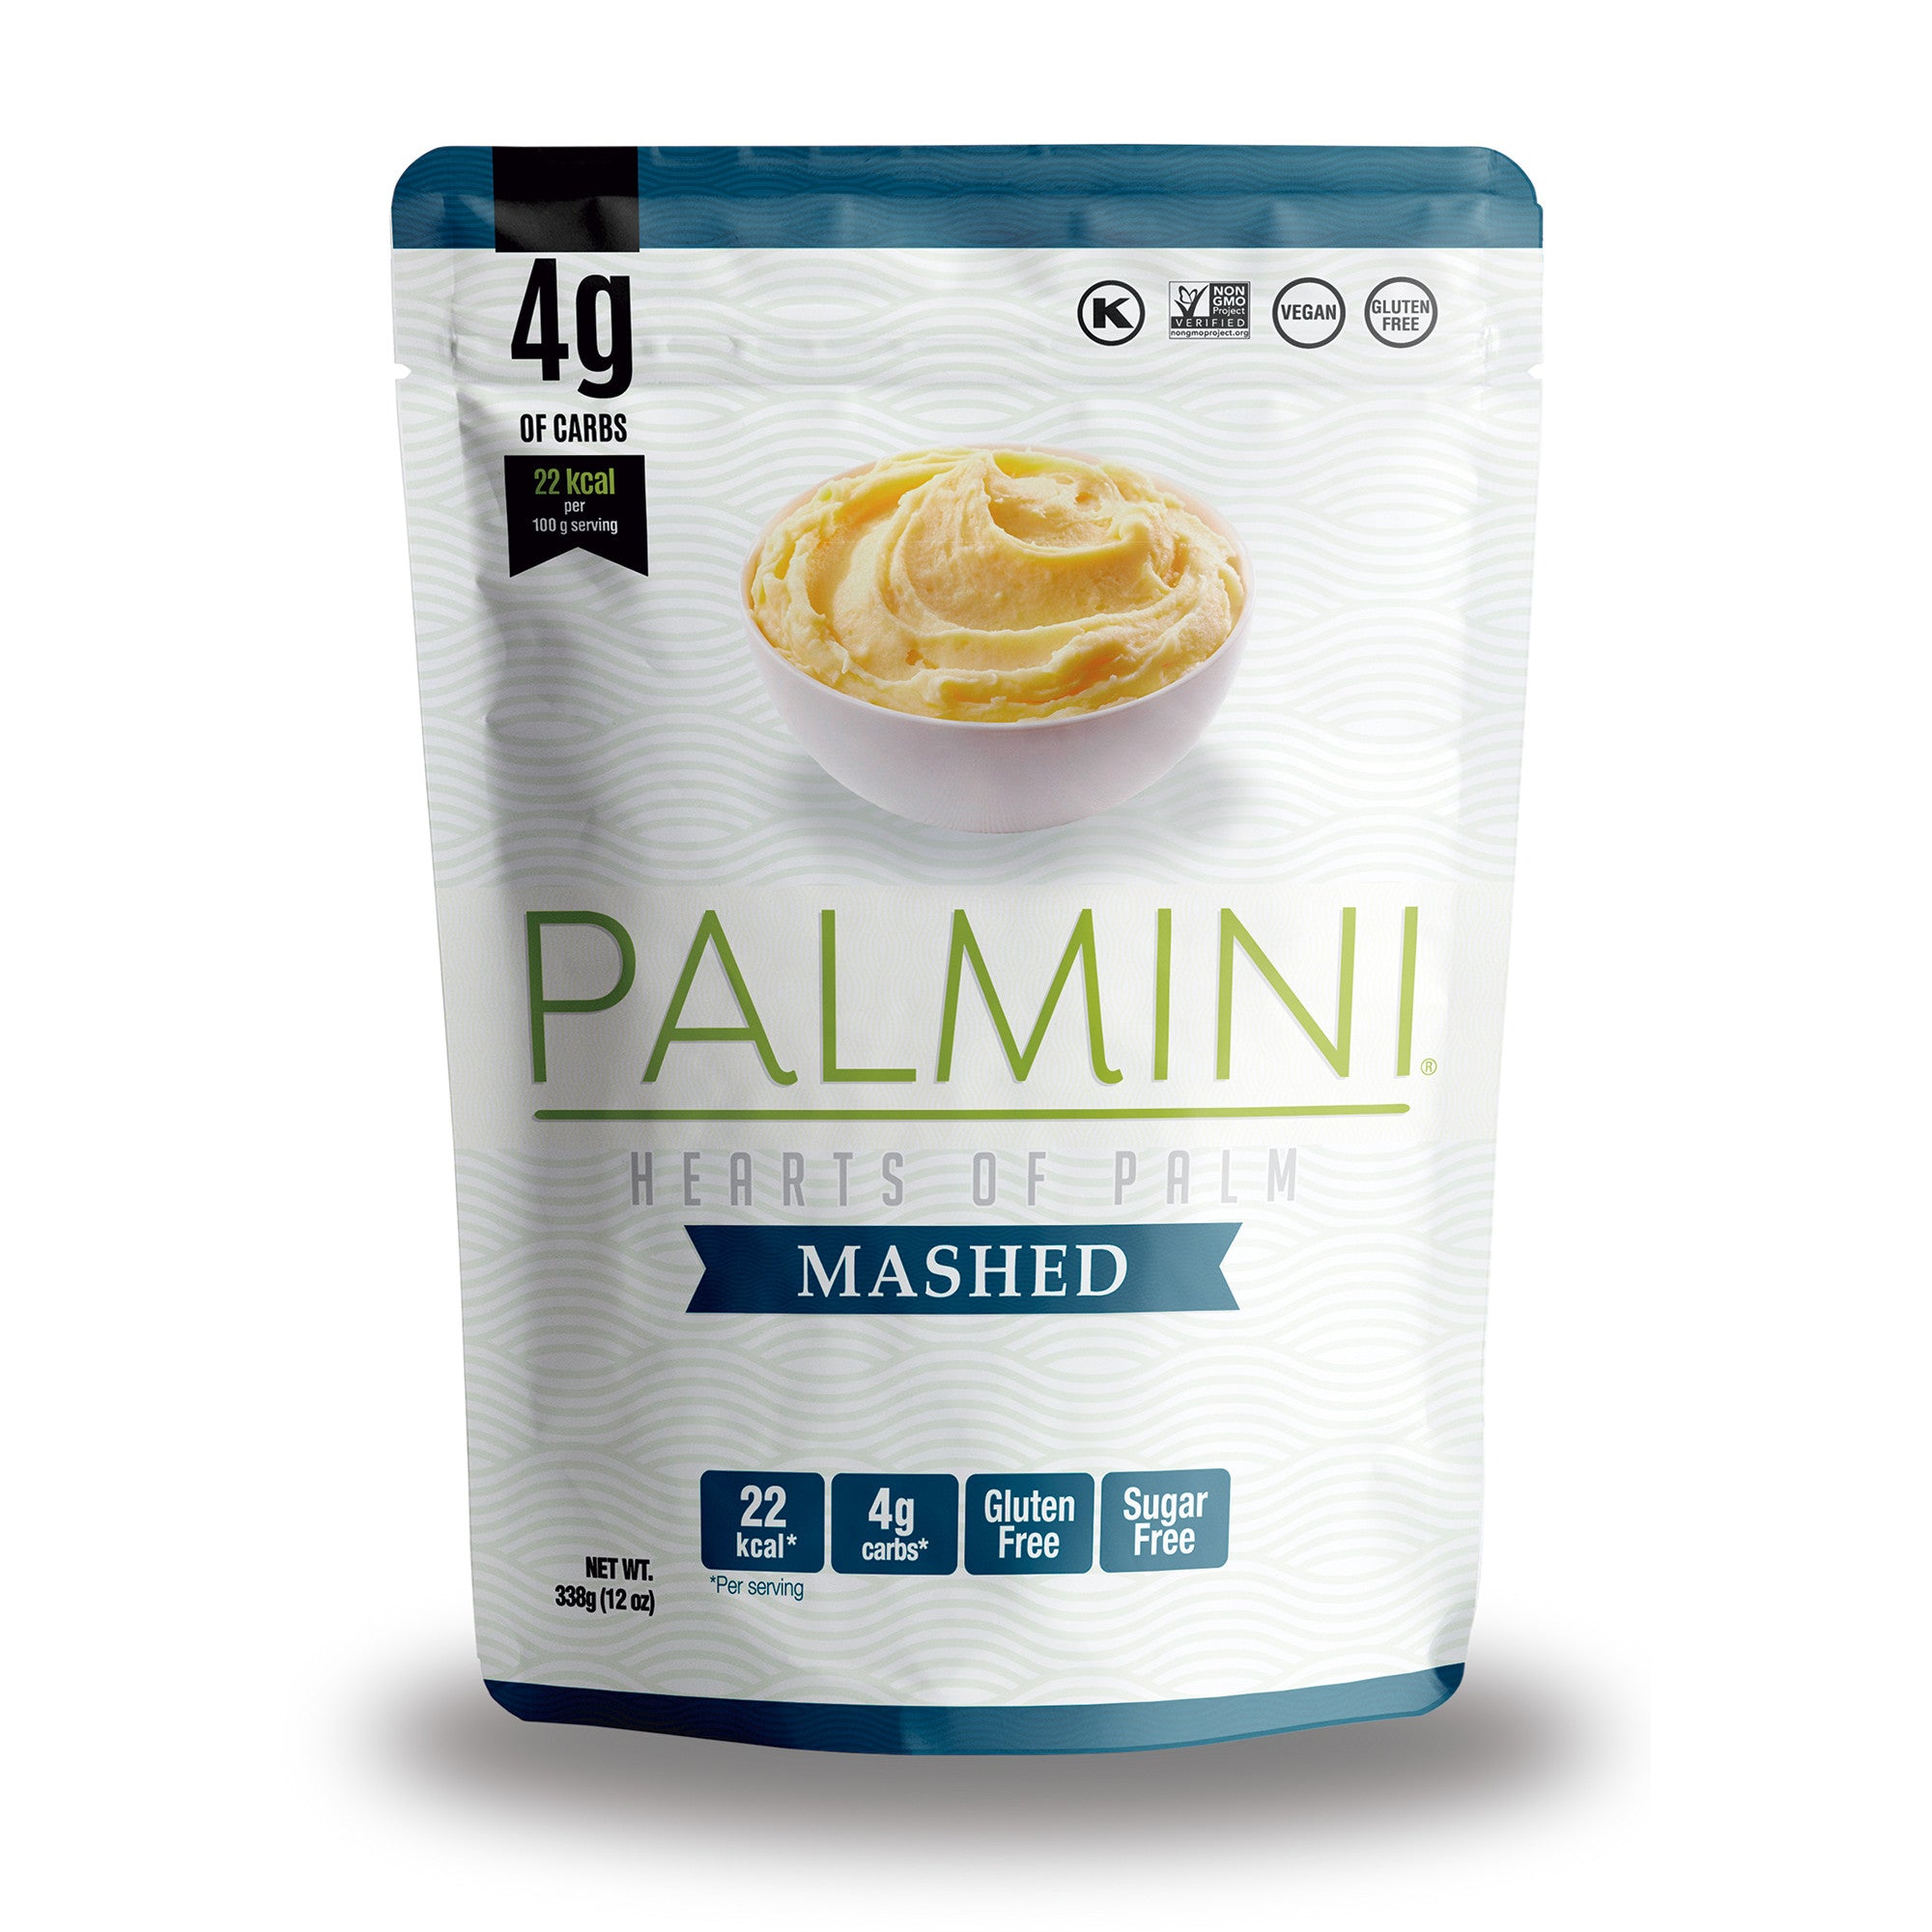 Palmini - Purée nature - 4 g de glucides - Sans gluten - Paquet de 340 g